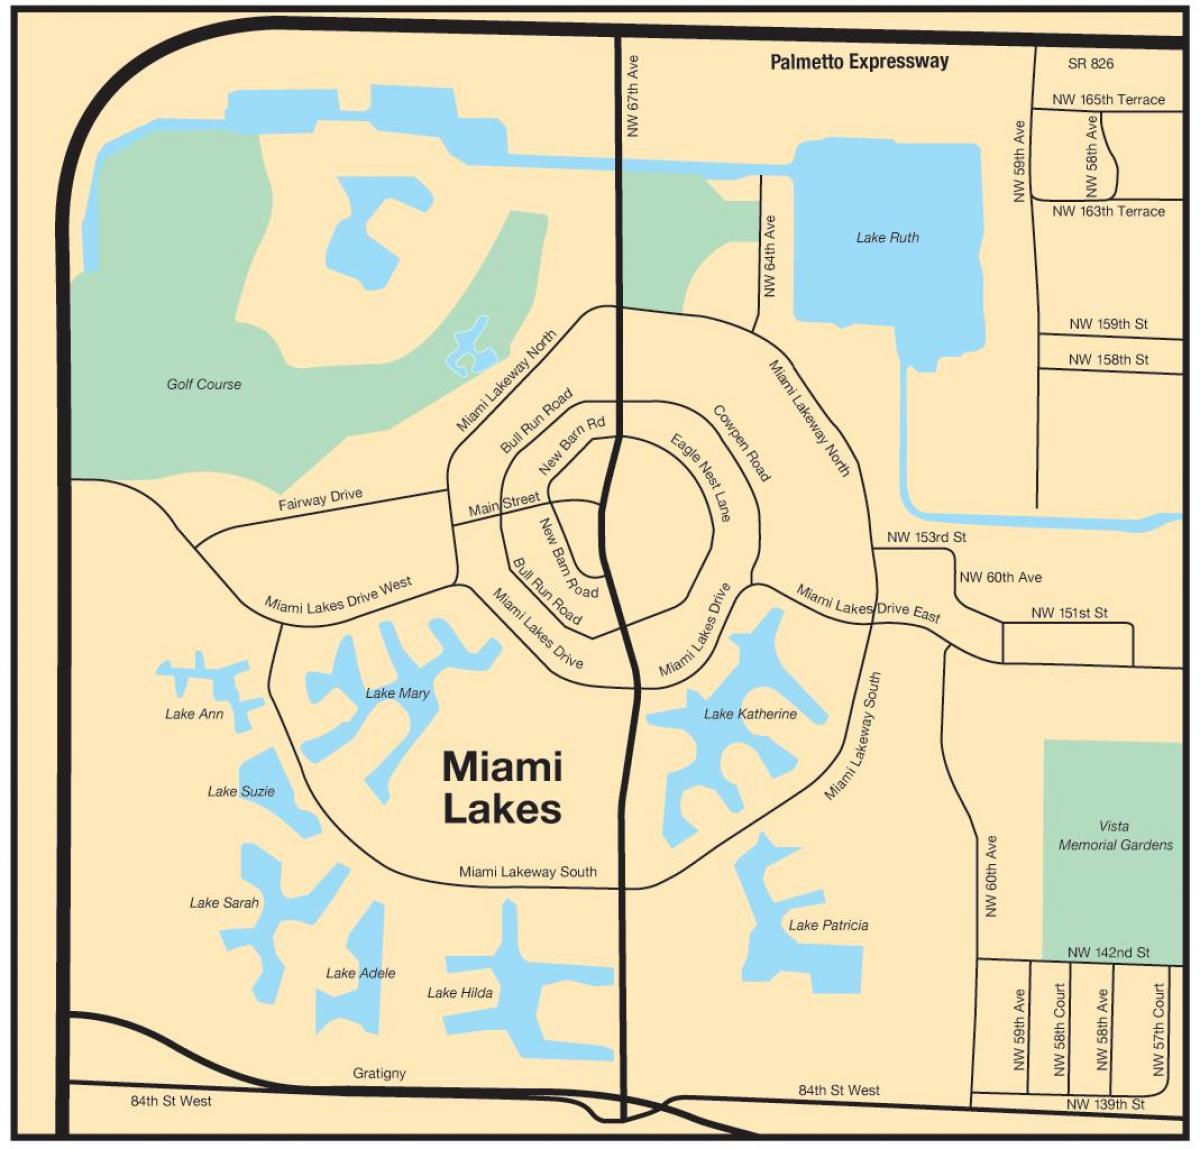 miami térkép Miami lakes térkép   Térkép Miami lakes (Florida USA) miami térkép